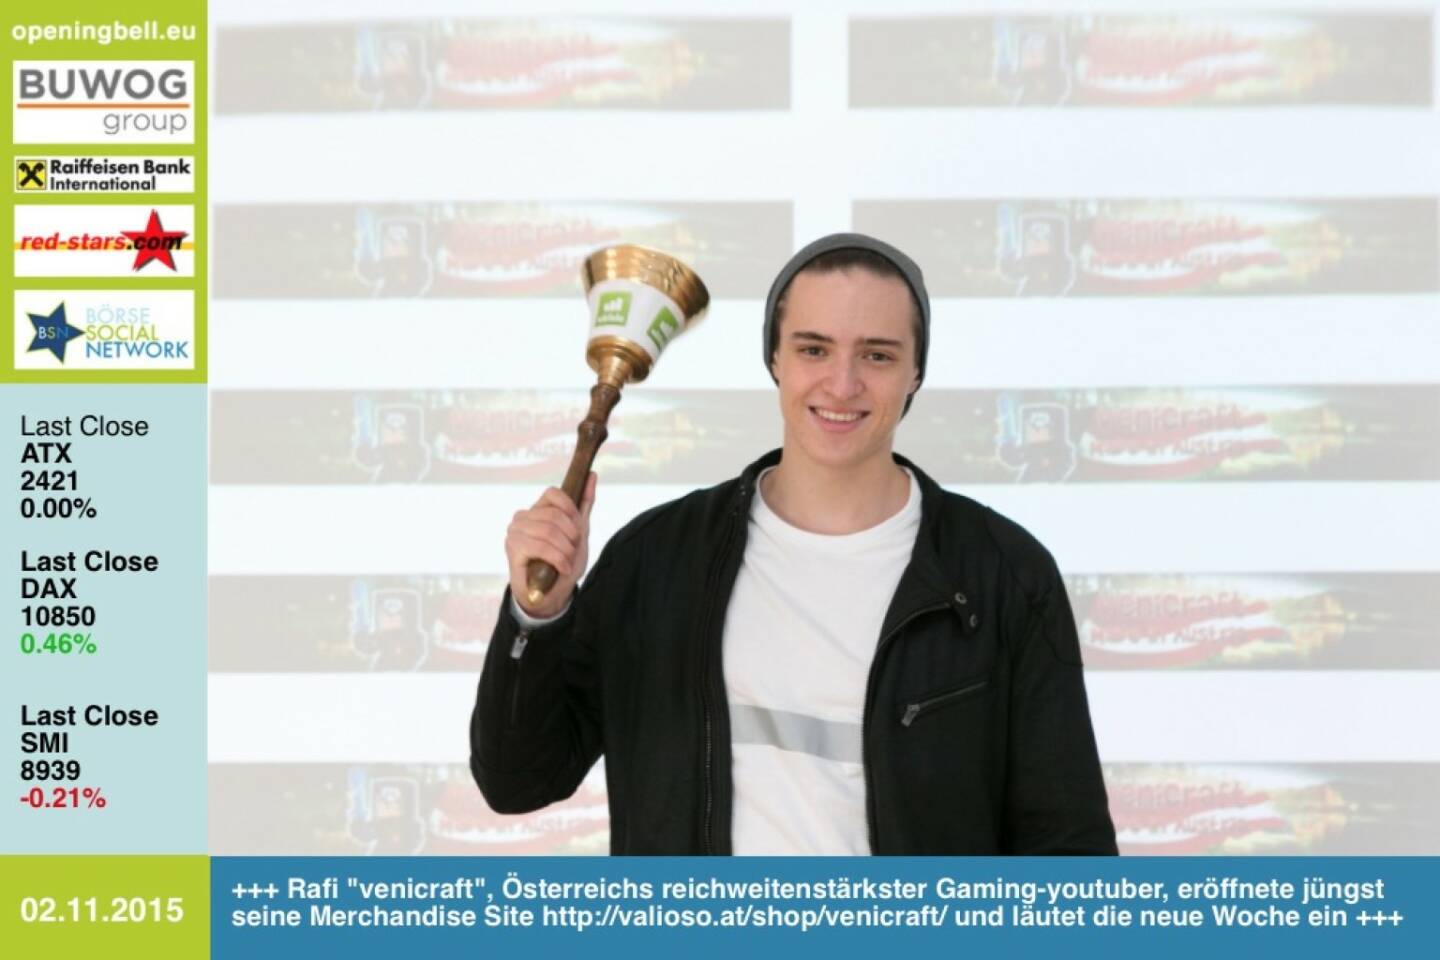 #openingbell am 2.11.:  Rafi venicraft, Österreichs reichweitenstärkster Gaming-youtuber, eröffnete jüngst seine Merchandise Site http://valioso.at/shop/venicraft/ und läutet die neue Woche ein -> mehr von venicraft: http://bit.ly/1Pg6LaY http://www.openingbell.eu